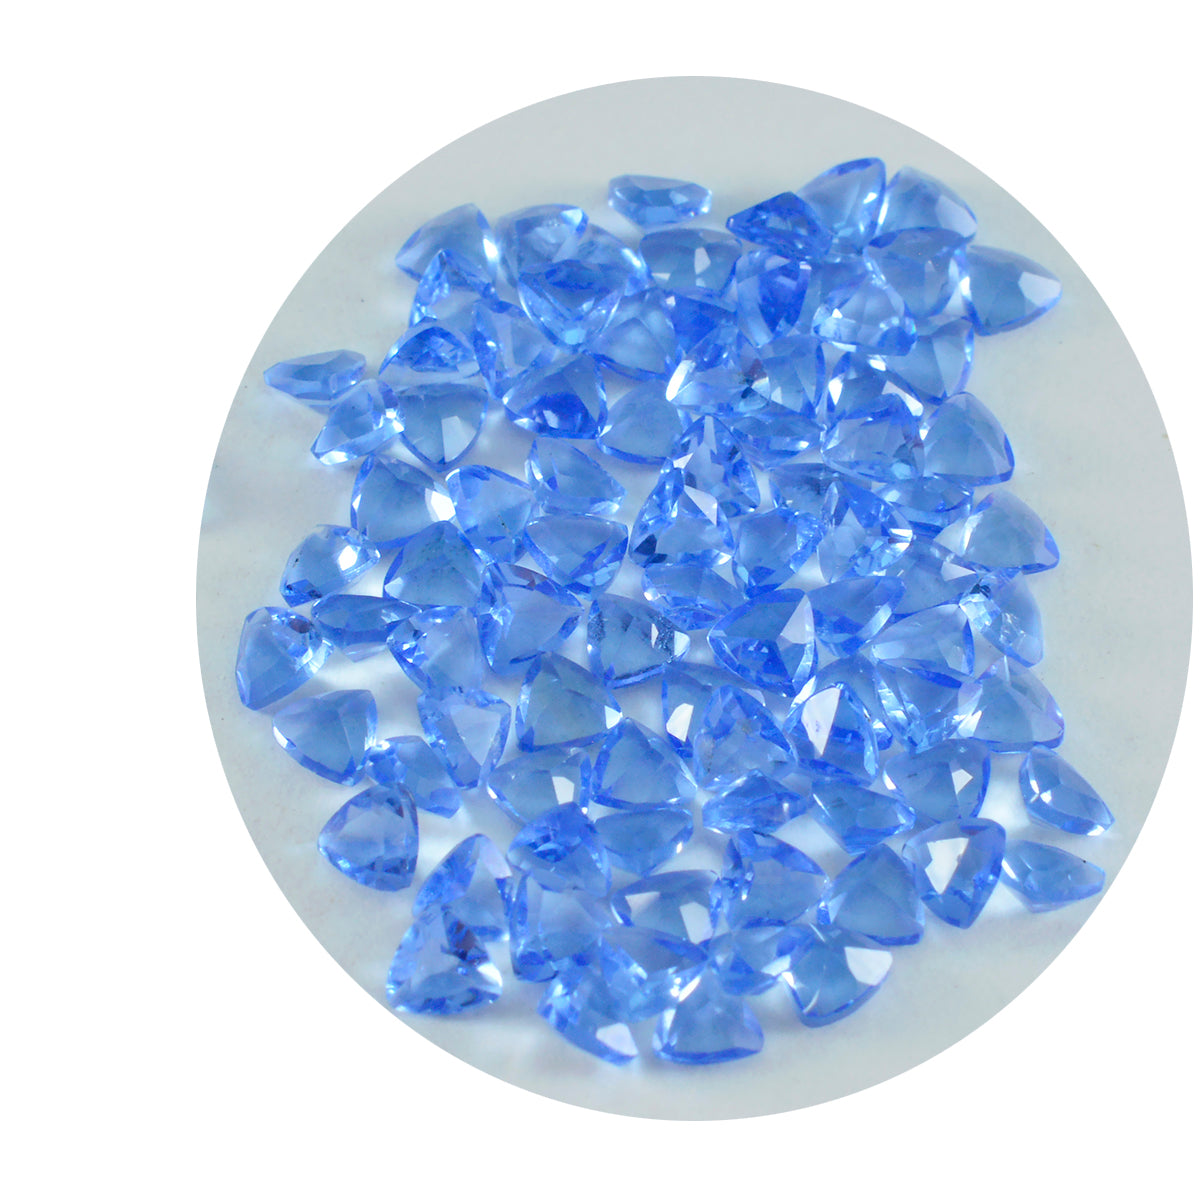 Riyogems 1 Stück blauer Saphir, CZ, facettiert, 4 x 4 mm, Billionenform, hübscher Qualitätsedelstein